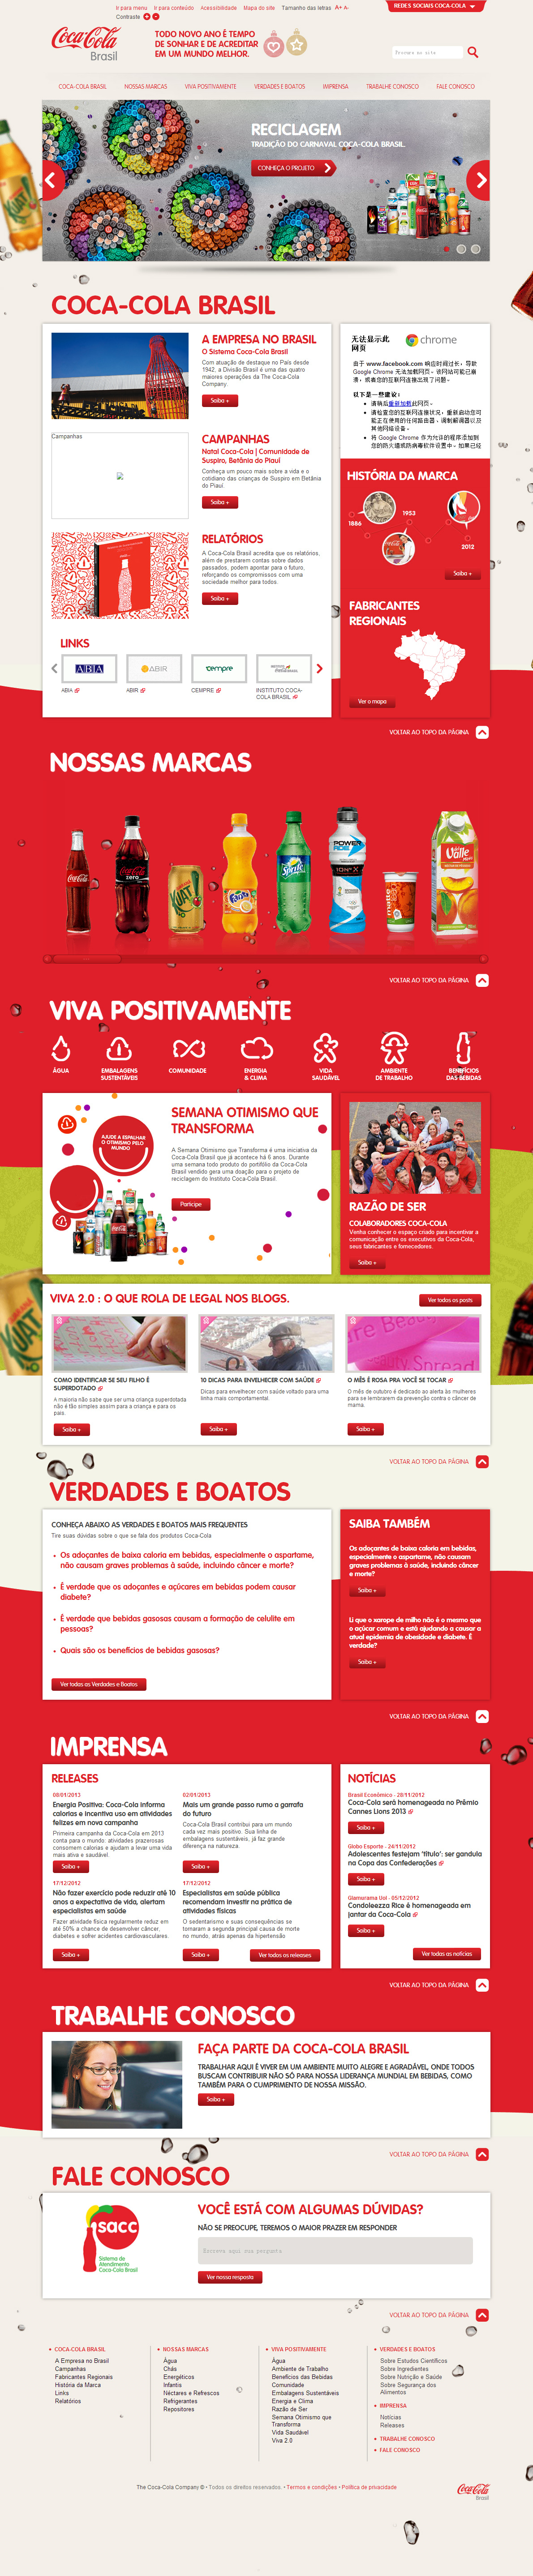 可口可乐巴西网站